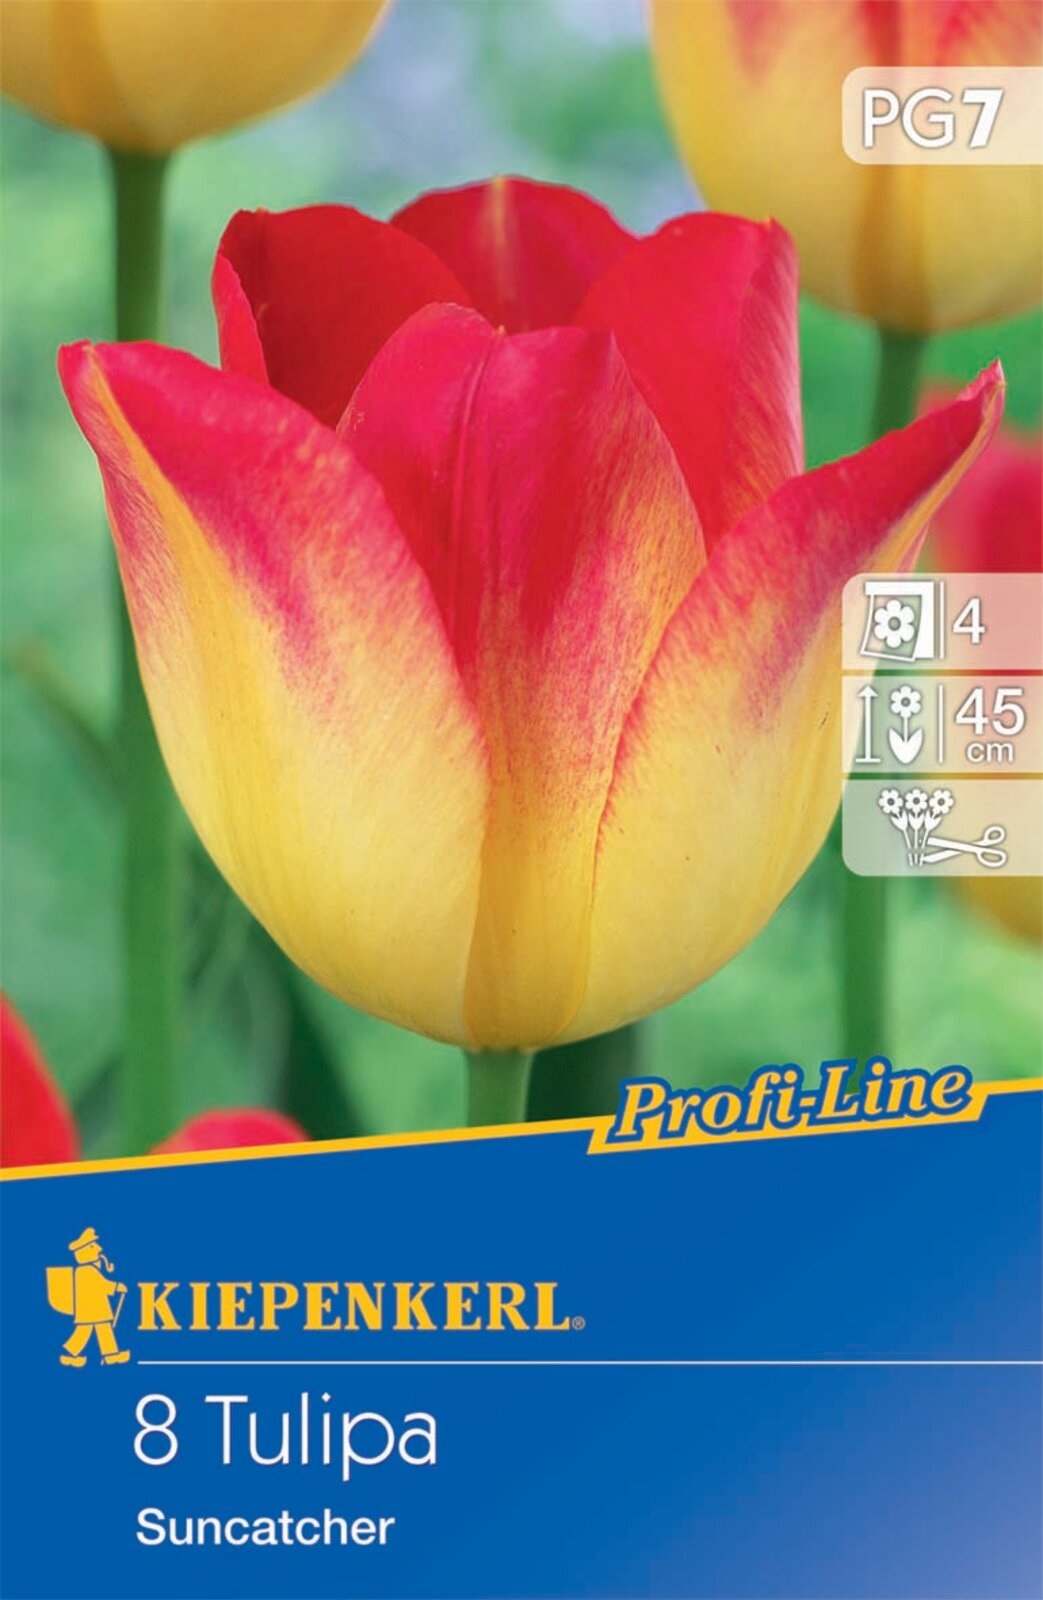 Flower bulb Tulip Suncatcher 8 pcs Kiepenkerl